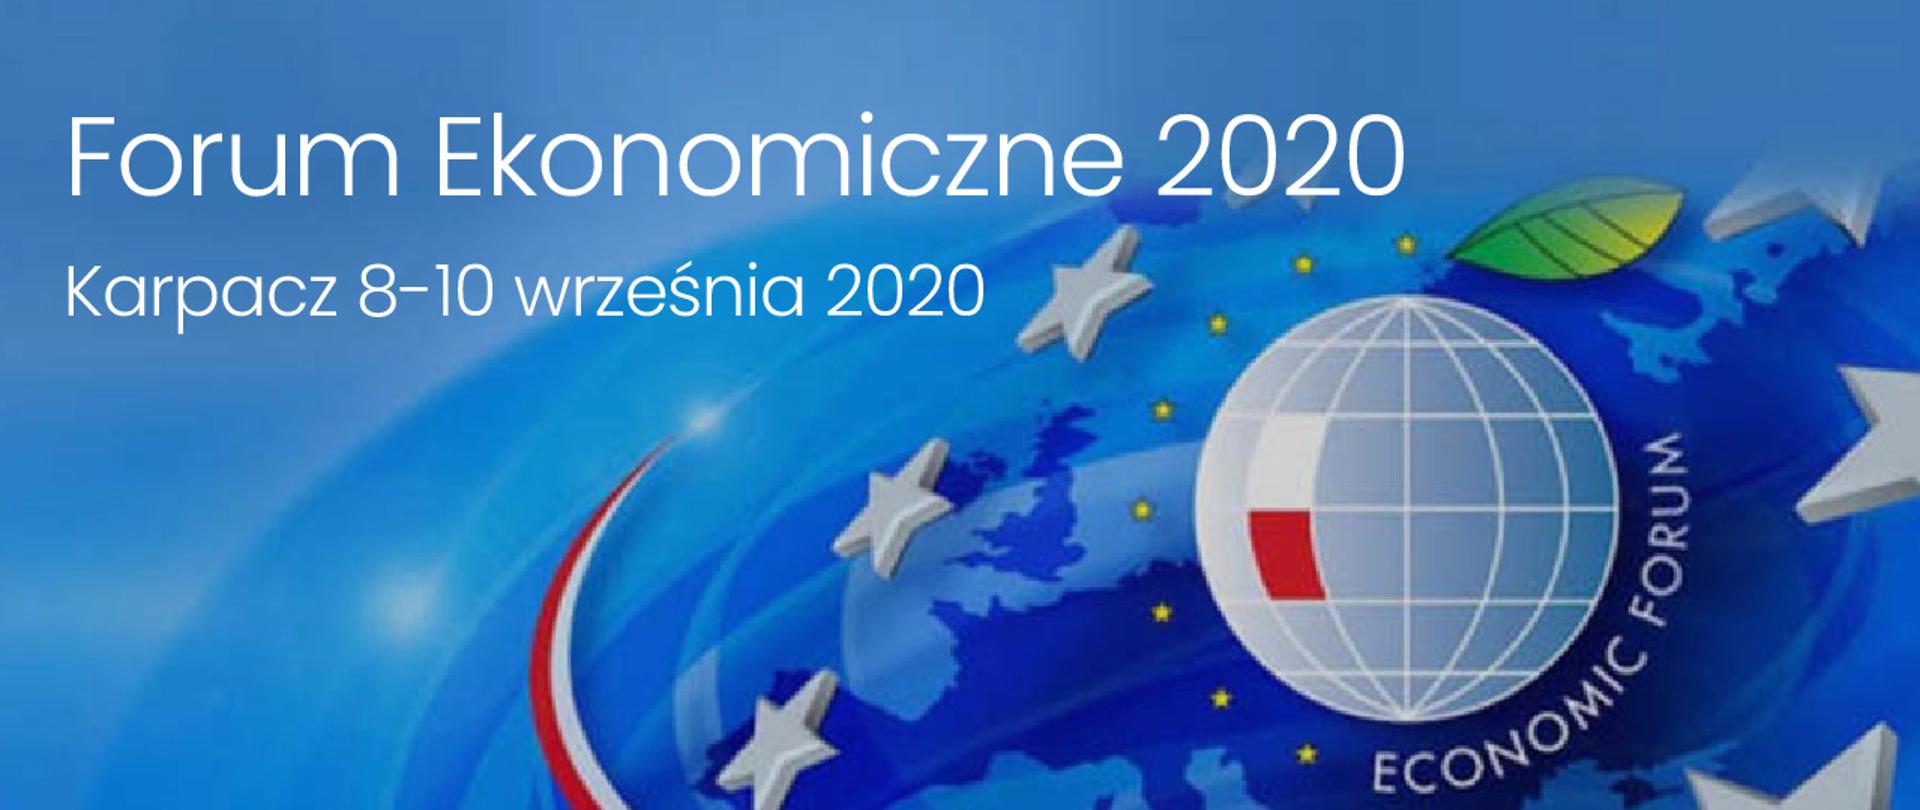 Na tle mapy przedstawiona kula ziemska z zaznaczonym flagą biało-czerwoną obszarem Polski. Na górze napis Forum Ekonomiczne 2020. Karpacz 8-10 września 2020. Całość na niebieskim tle.